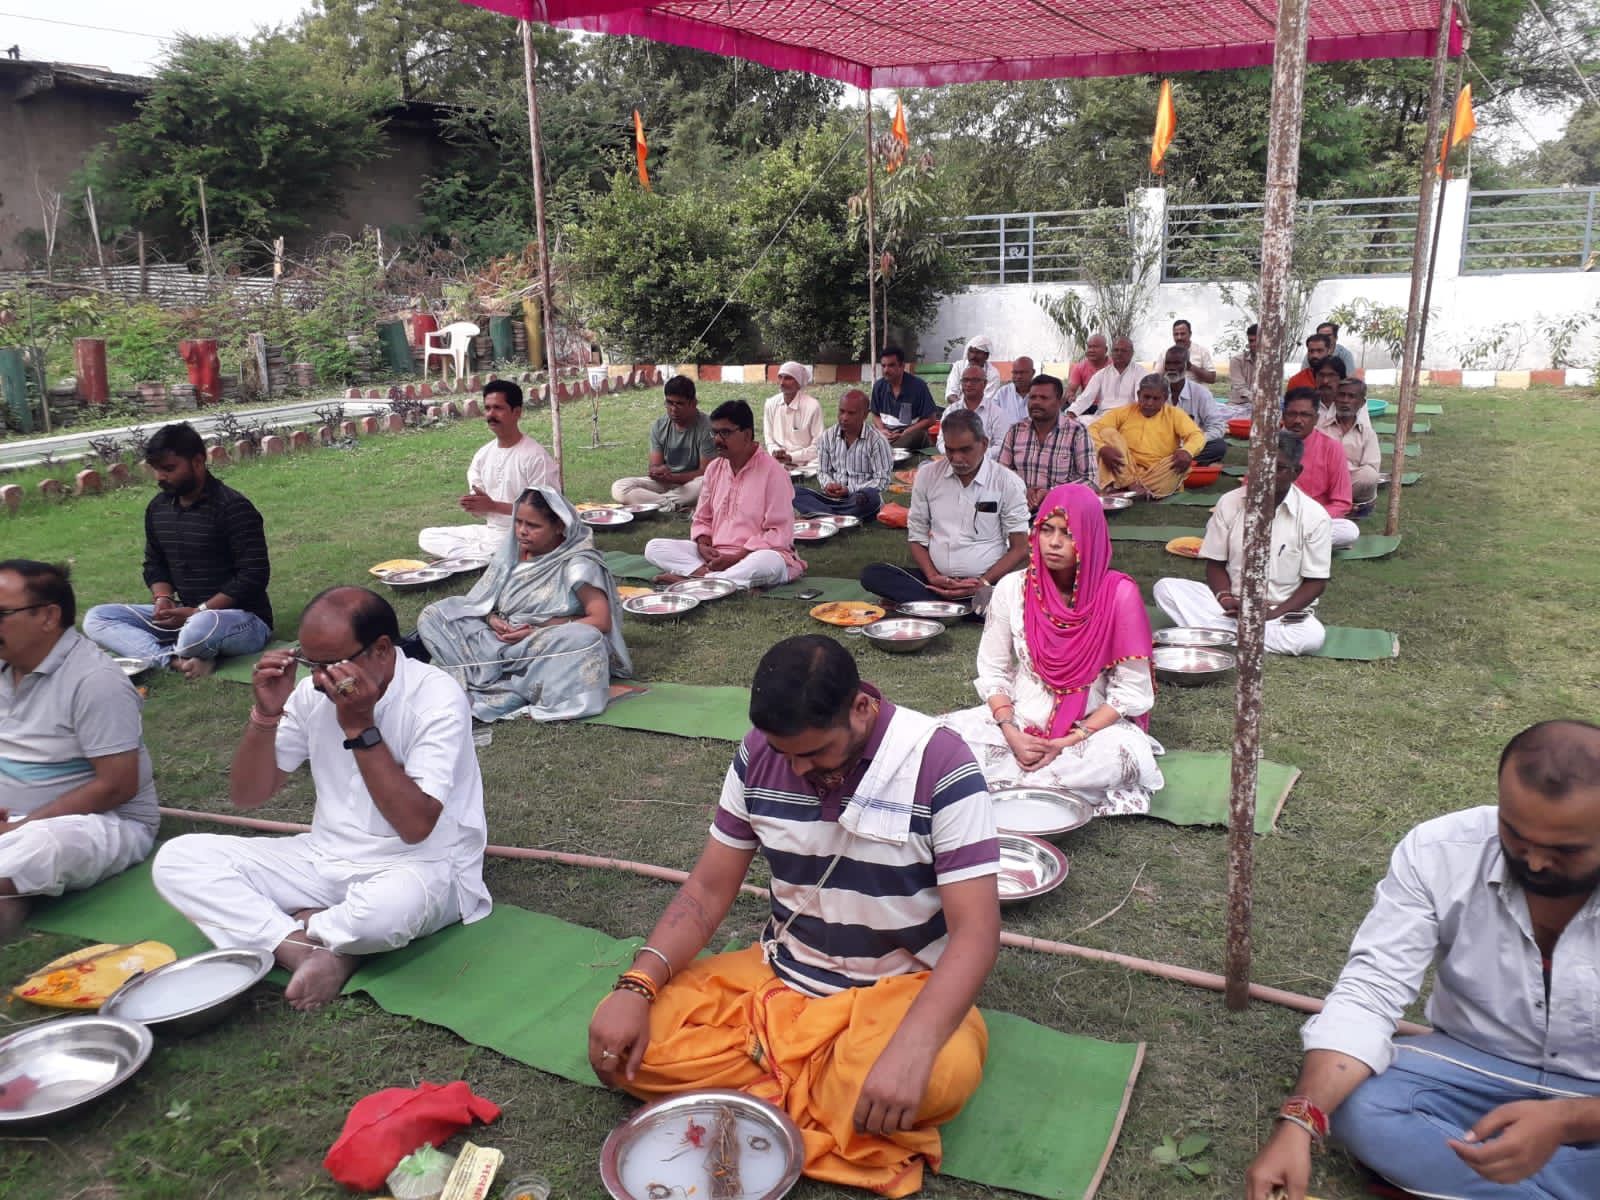 Tarpan performed at Subhash Nagar Vishram Ghat